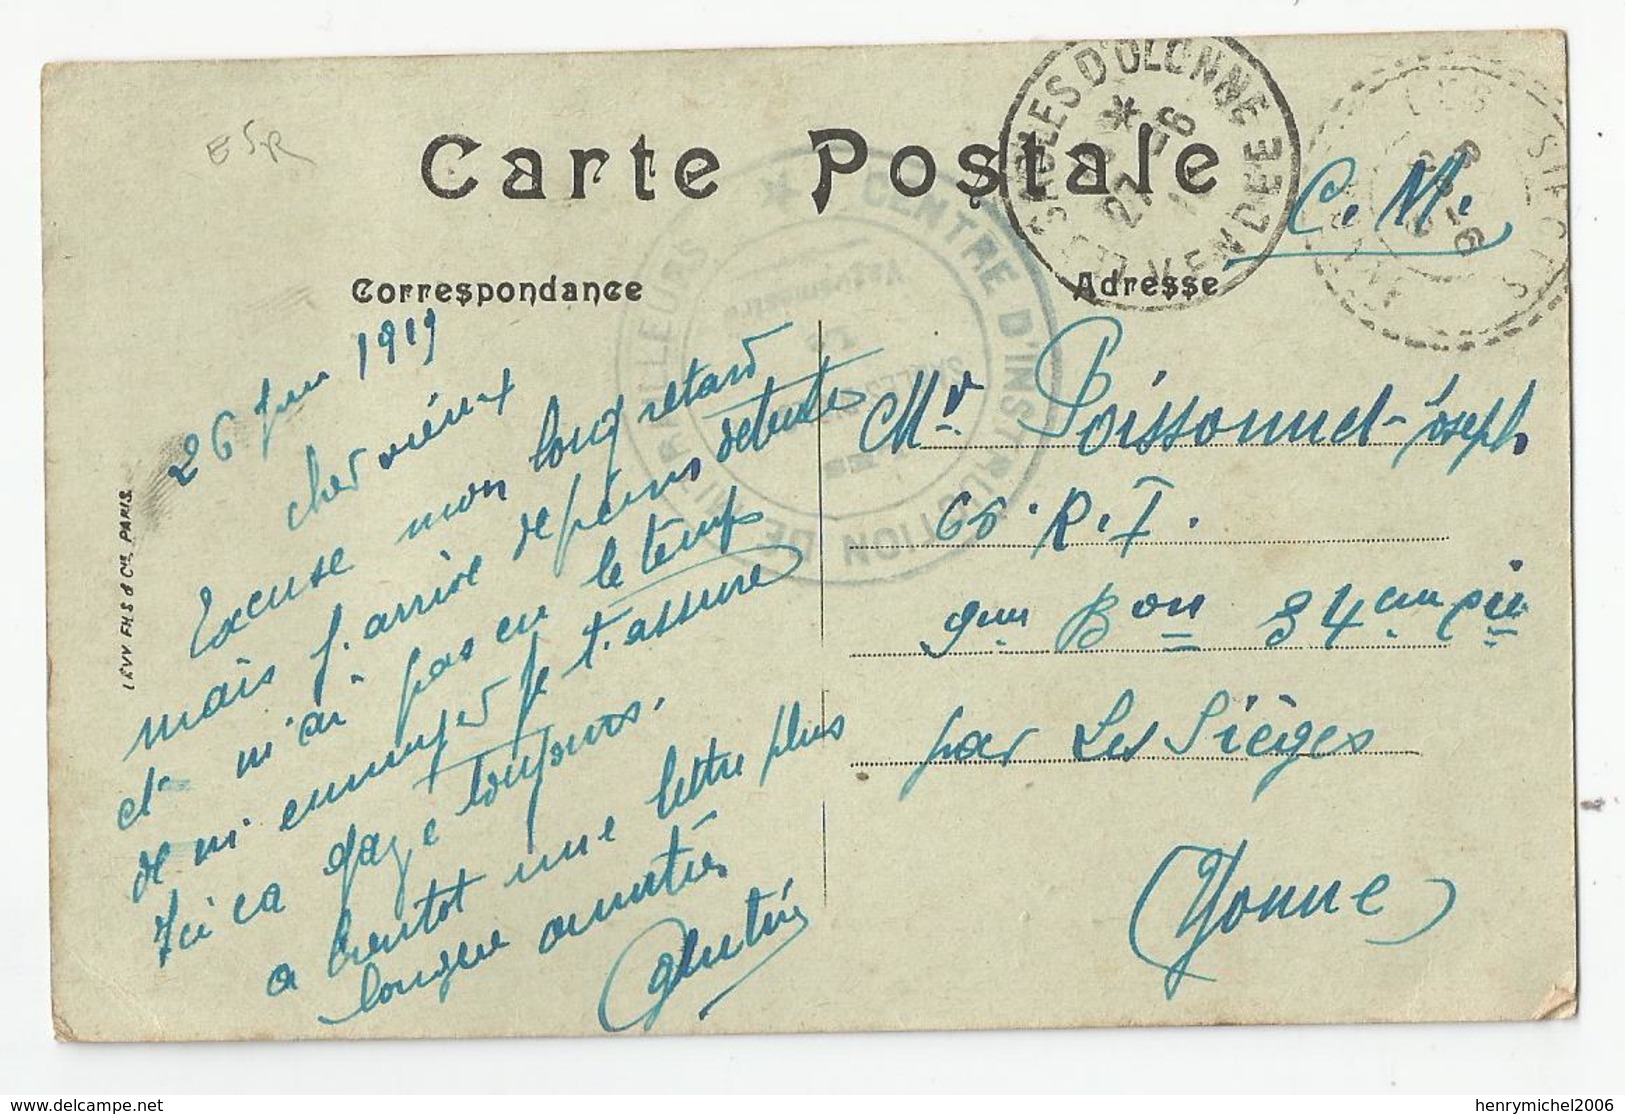 Cachet Centre D'instruction De Mitrailleurs Les Sables D'olonnes 85 Vendée 1919 Pour 66 Ri Yonne 89 Carte Royan 17 - WW I